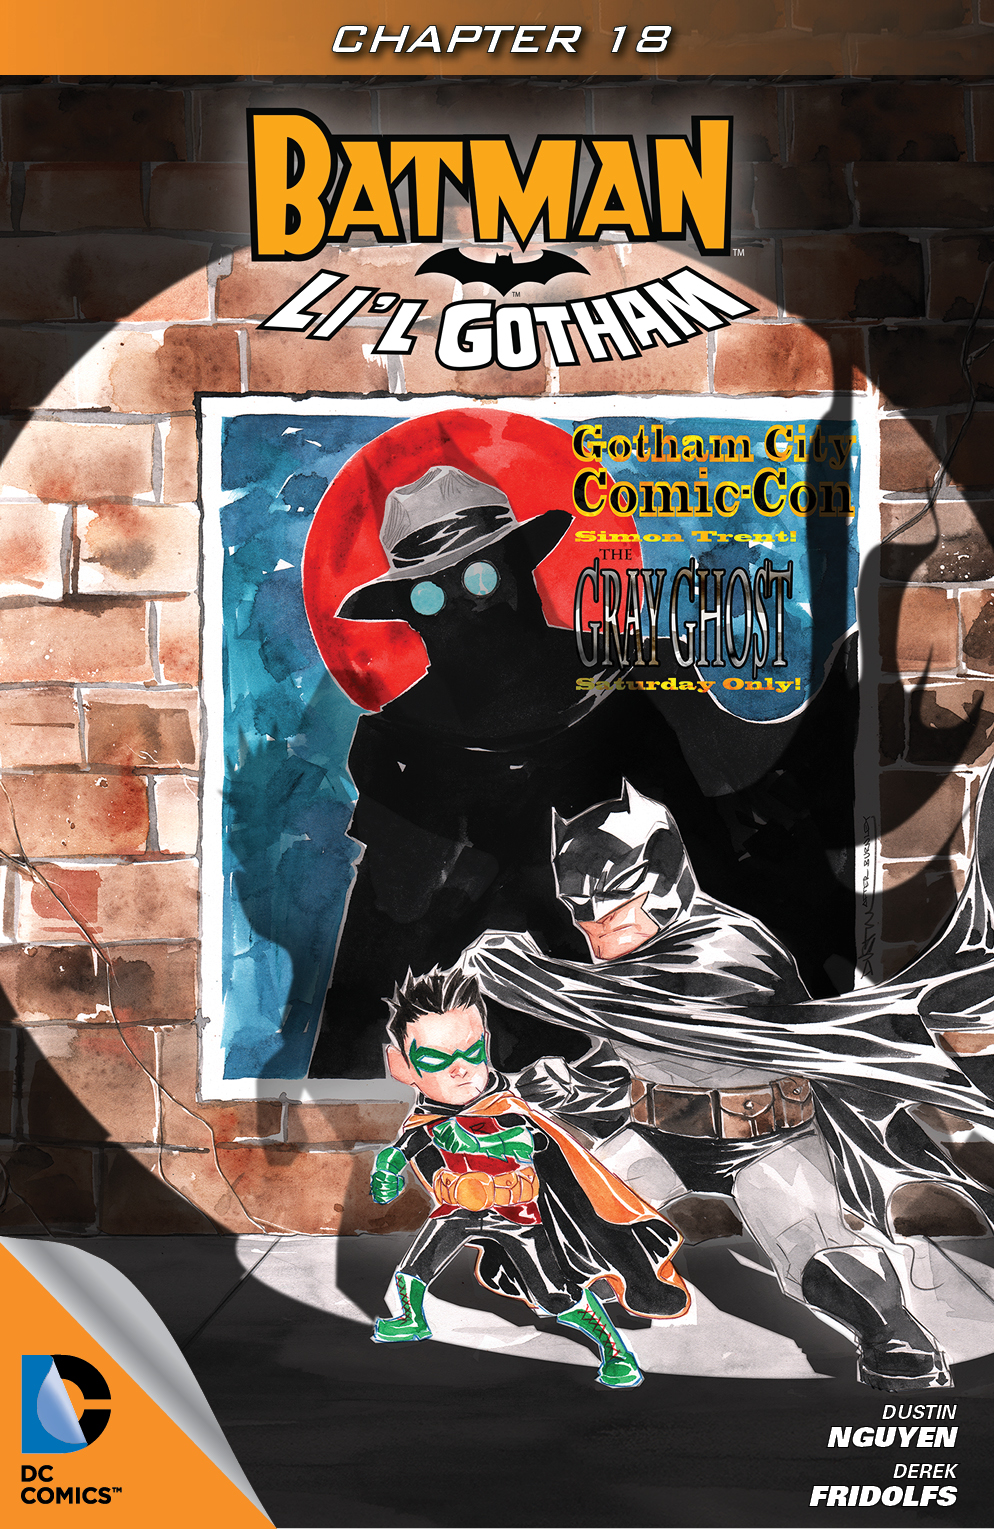 Batman: Li'l Gotham #18 preview images